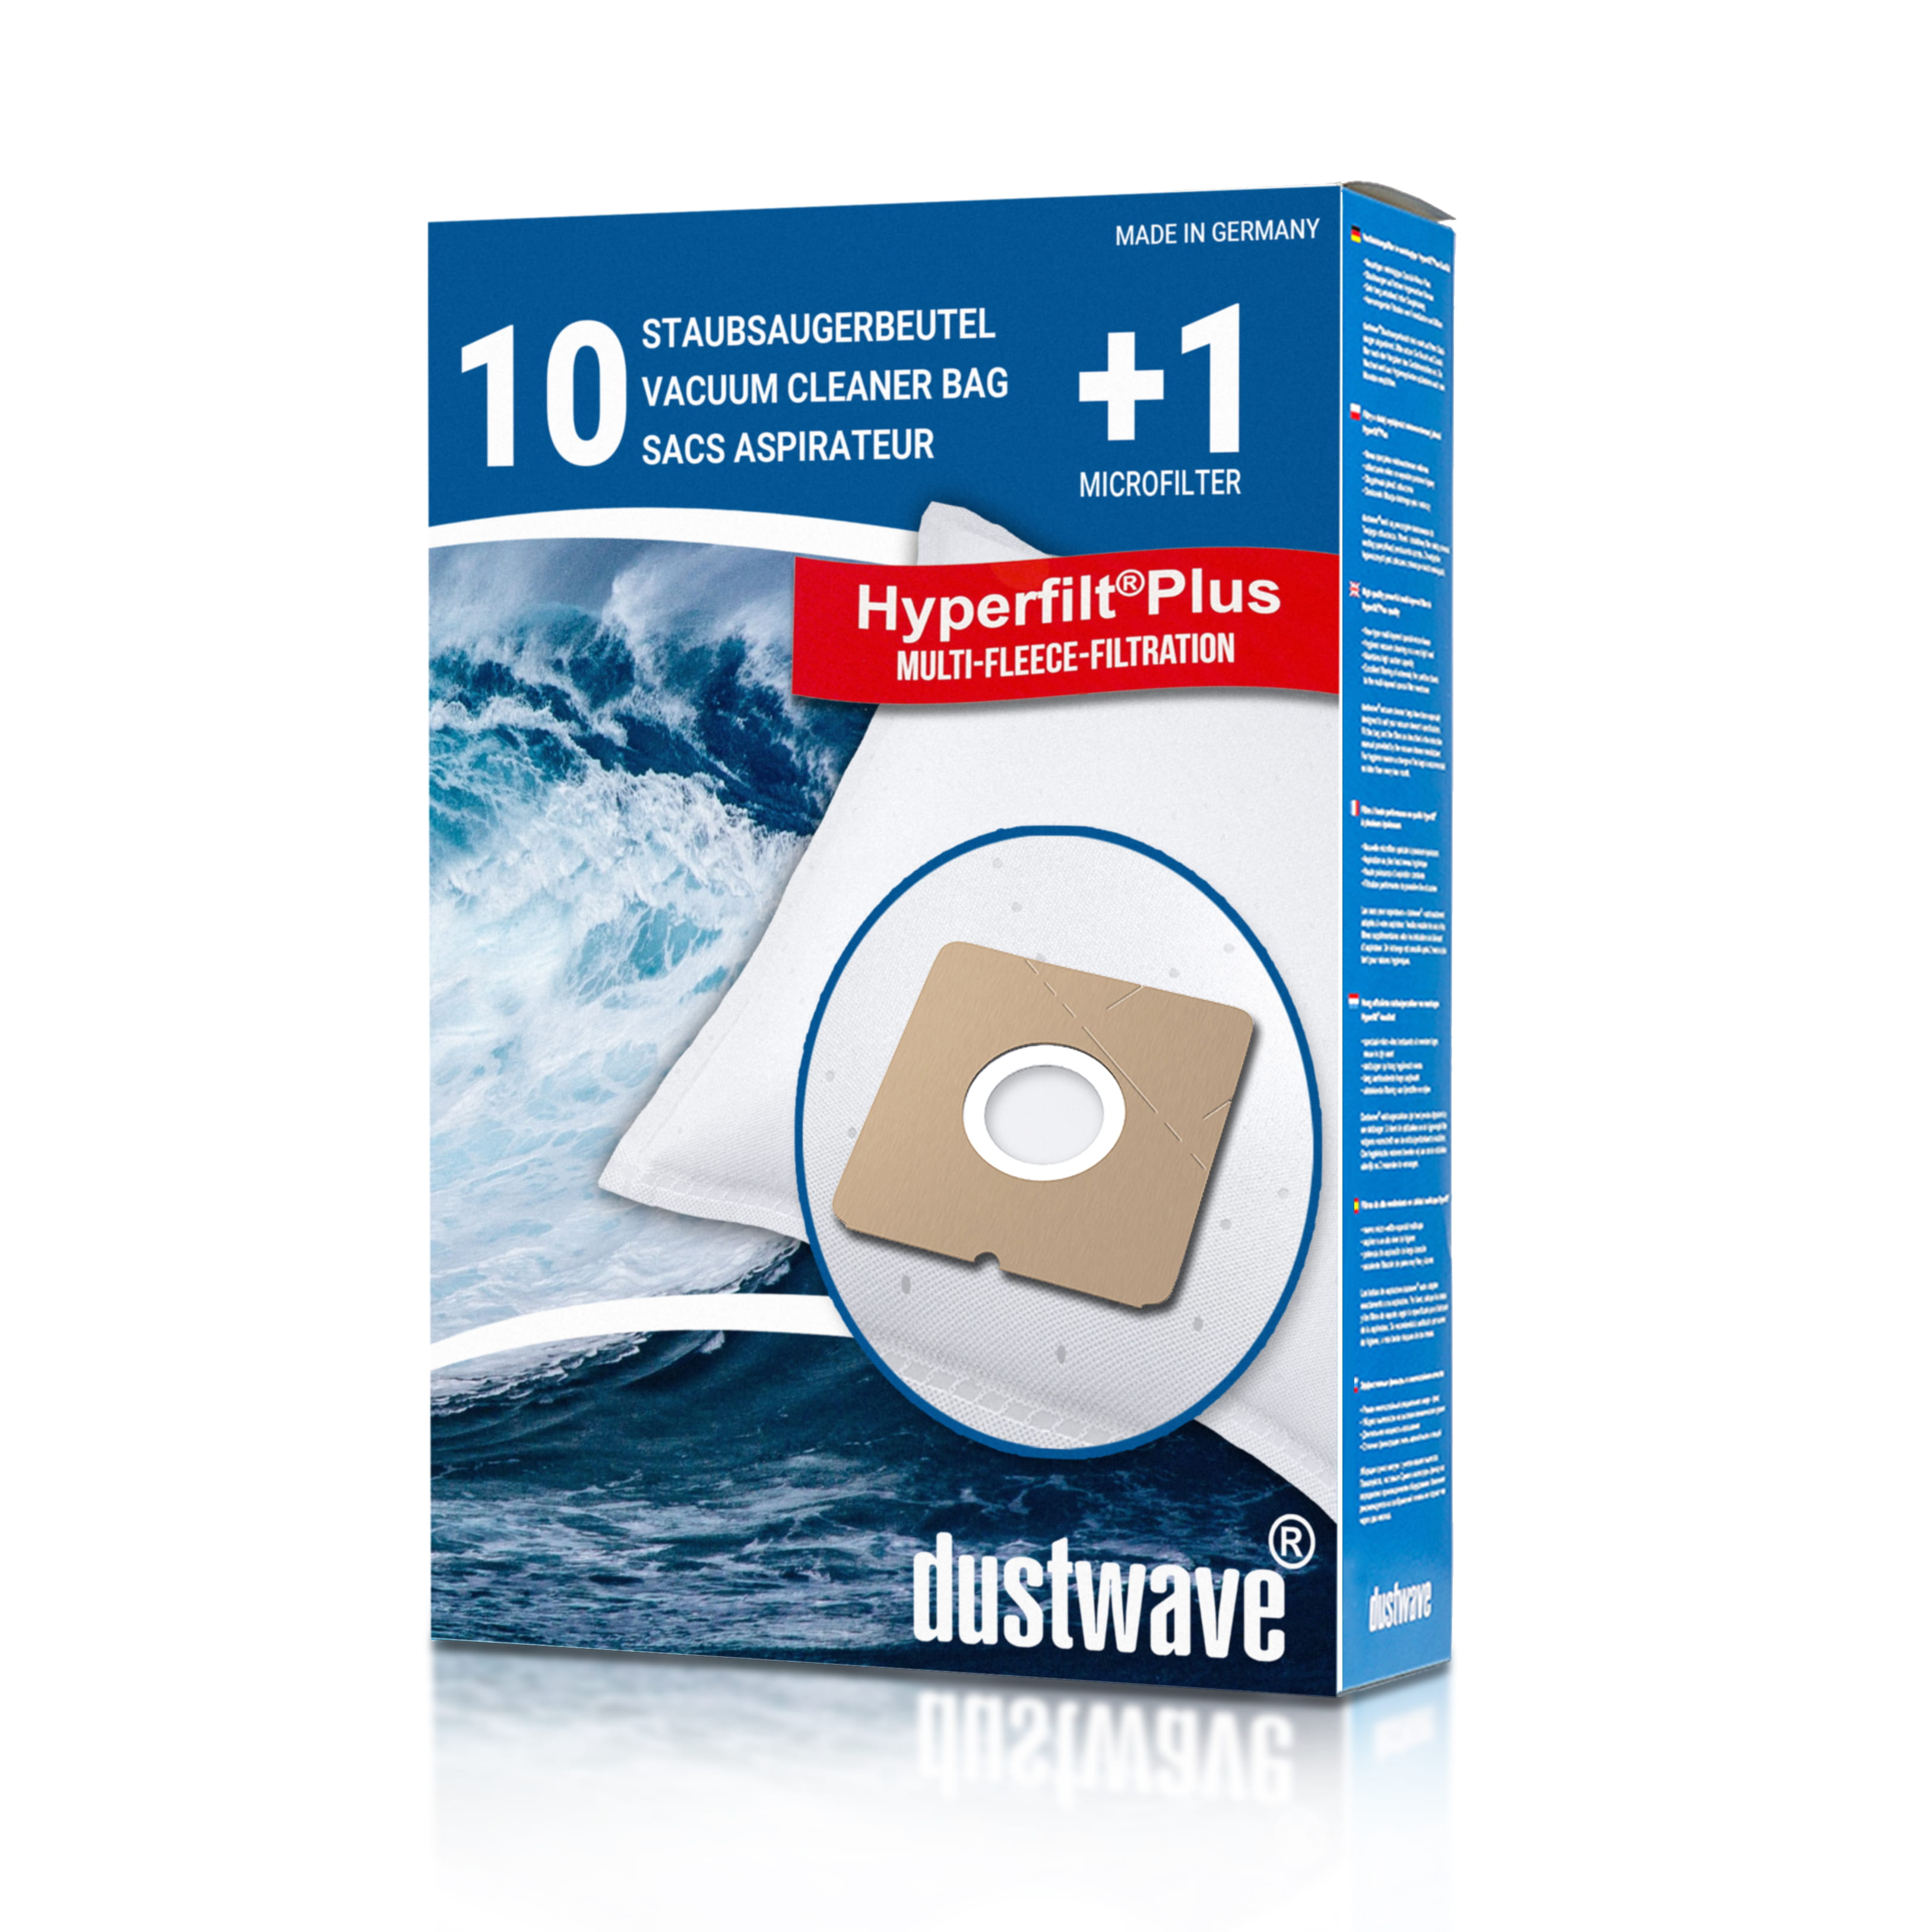 Dustwave® 10 Staubsaugerbeutel für Elekta EVC 1450 - hocheffizient, mehrlagiges Mikrovlies mit Hygieneverschluss - Made in Germany